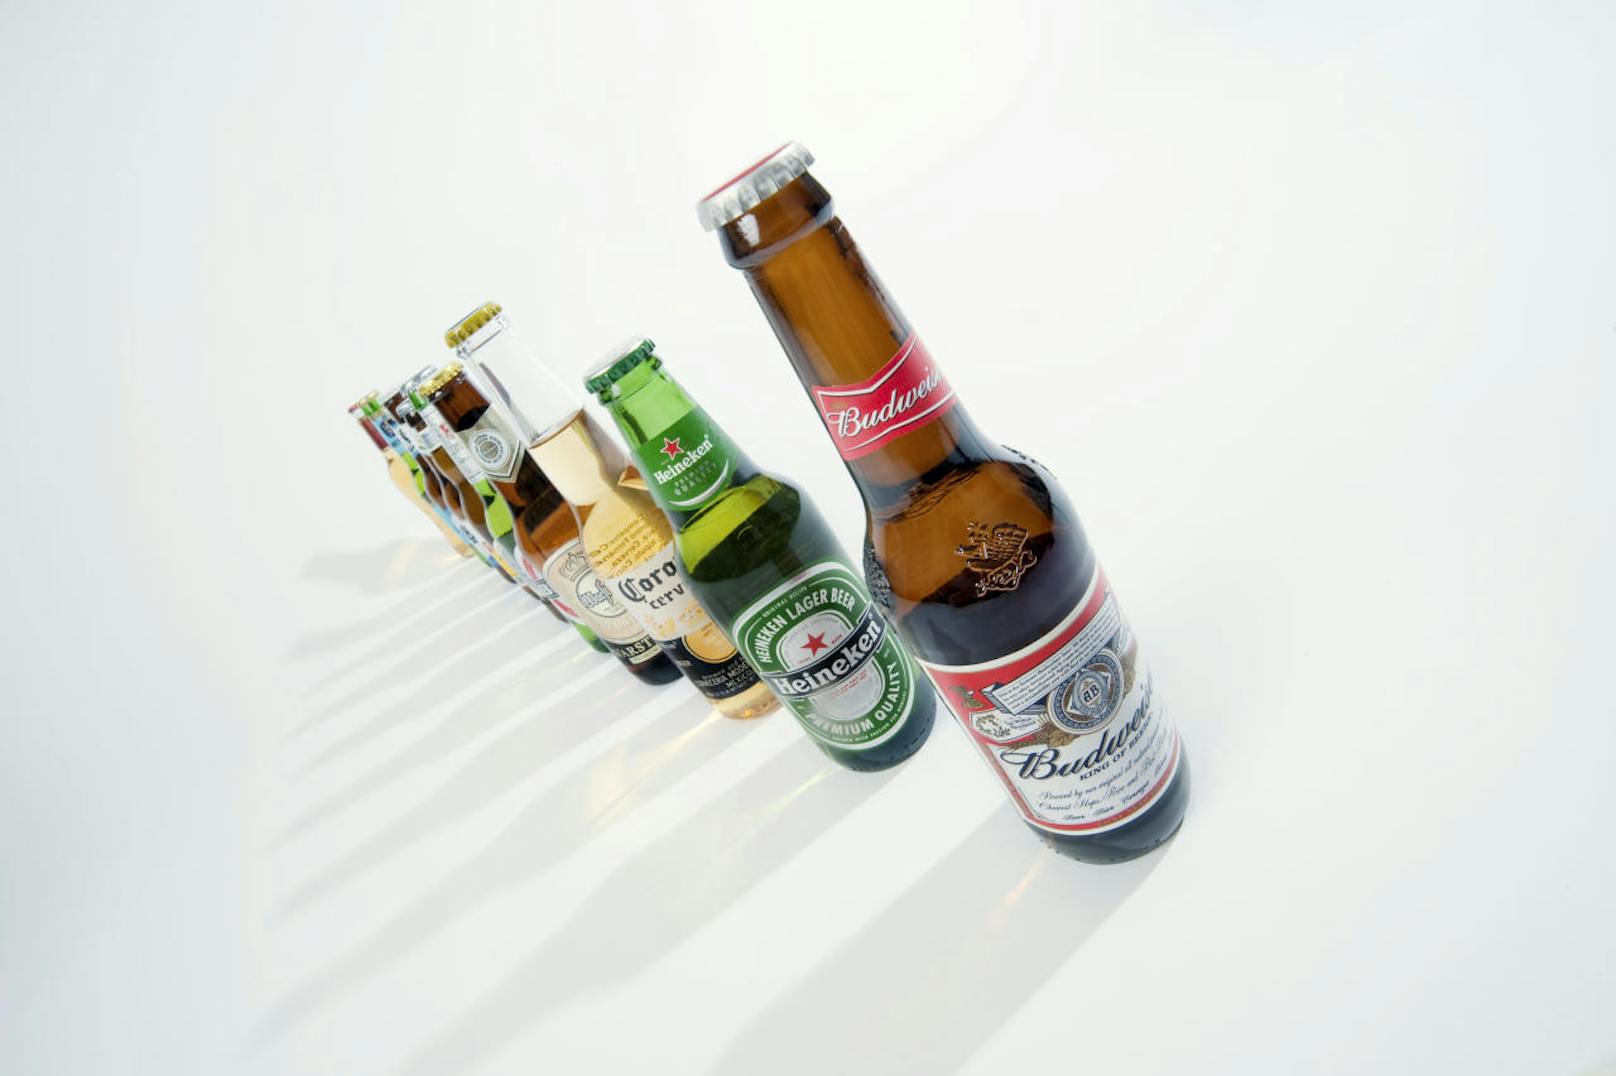 Den größten Pro-Kopf-Bierkonsum findet man allerdings in der Tschechischen Republik. Rund 143 Liter werden dort pro Person jährlich getrunken, Deutschland liegt mit 104 Litern auf Platz 2, dicht gefolgt von Österreich mit 103 Litern.